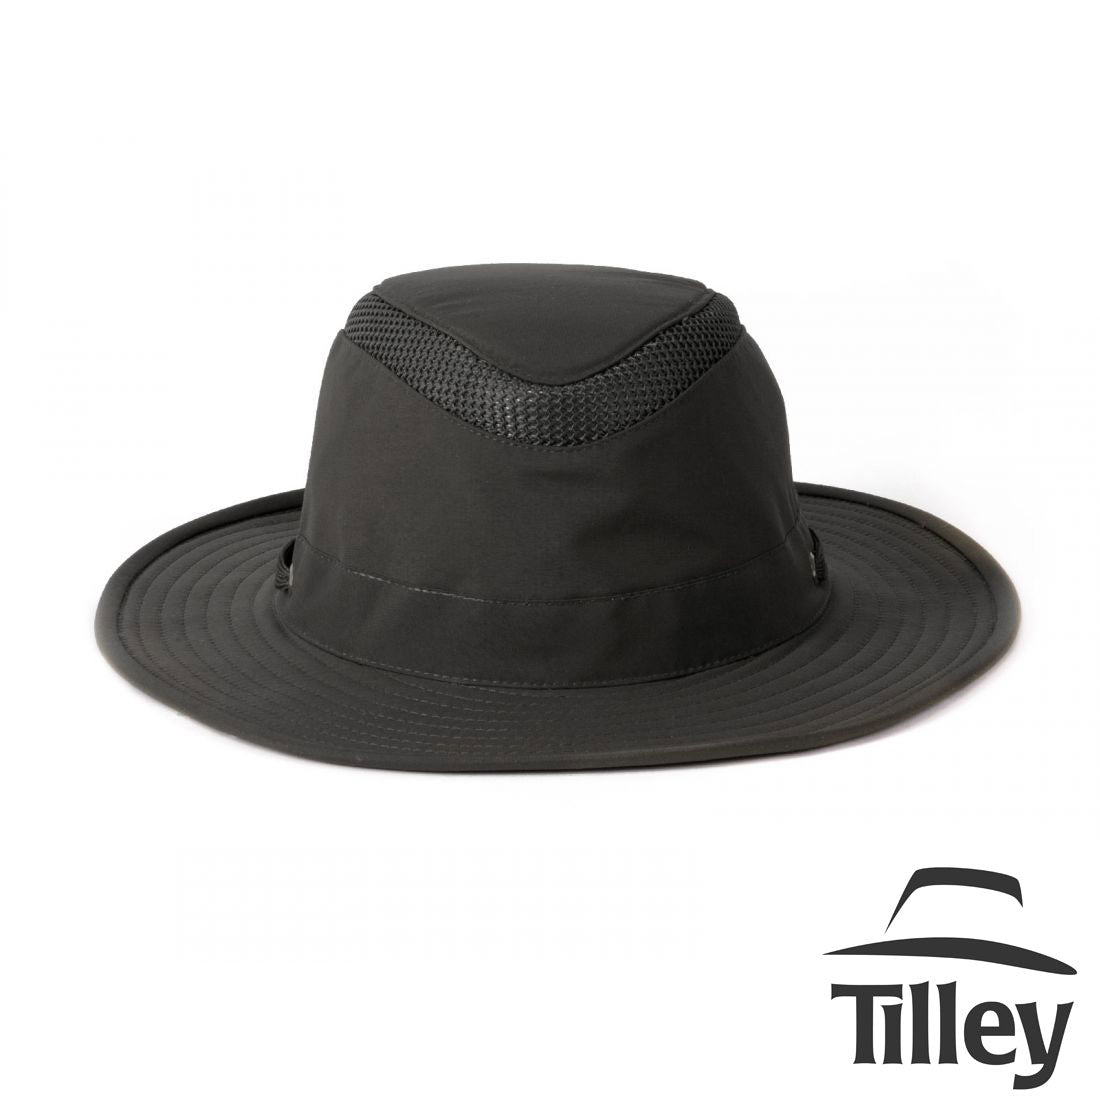 https://uniquemuskoka.com/cdn/shop/products/Tilley-Hat-Black.jpg?v=1621020818